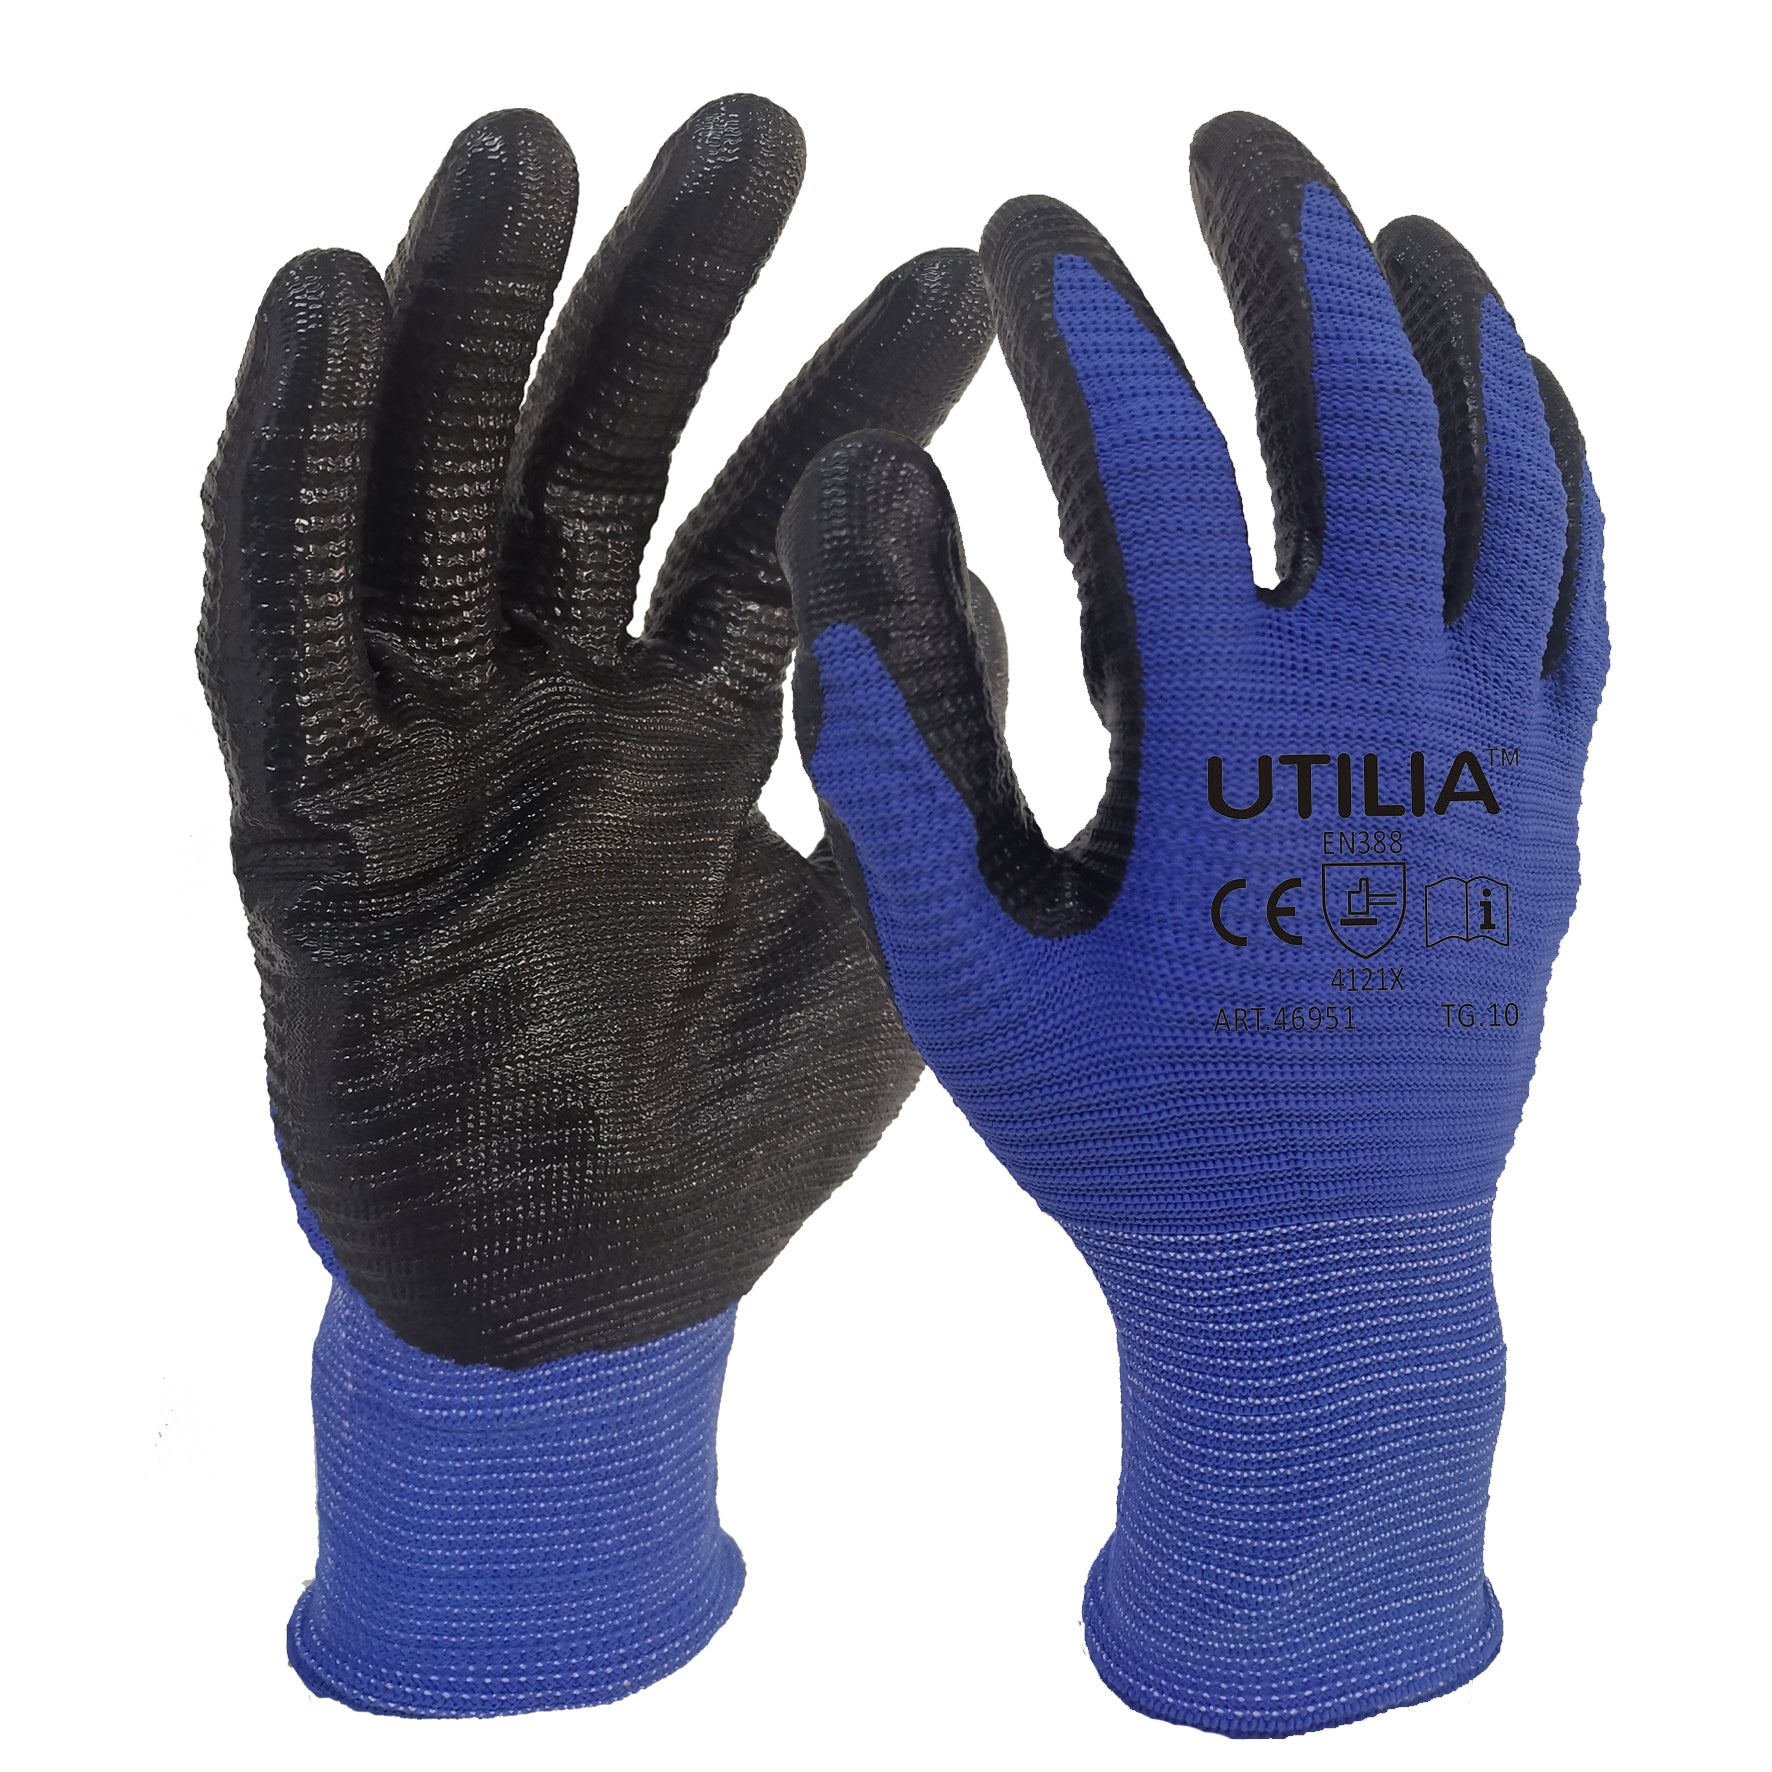 Utilia guanti in nylon/nitrile col. blu/nero tg. 9 (12 paia) - Utilia